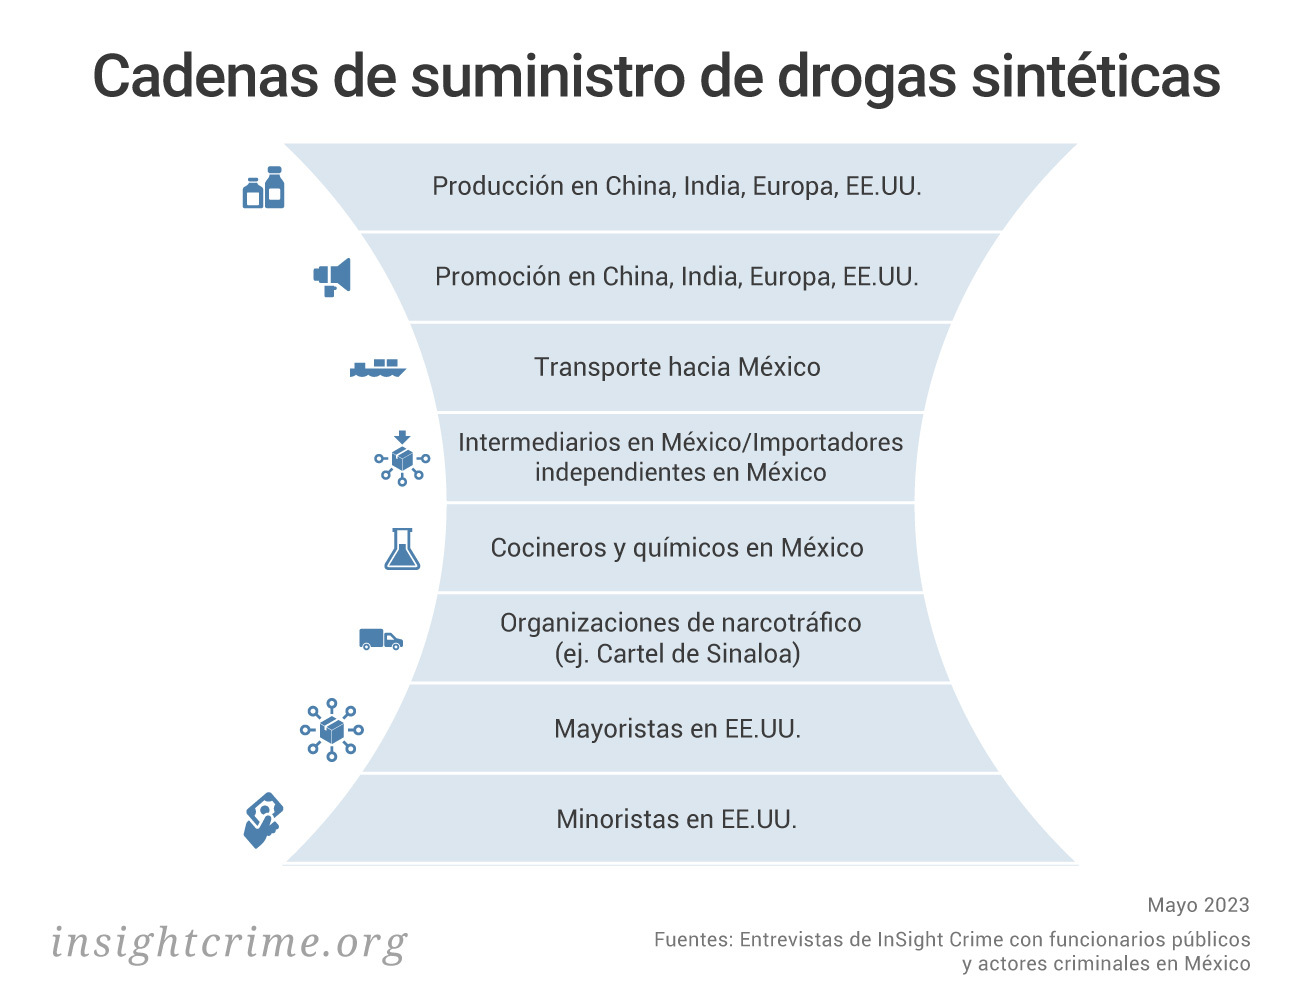 Este gráfico muestra la cadena de suministro de drogas sintéticas, donde se incluyen productores, distribuidores, transportistas, entre otros.